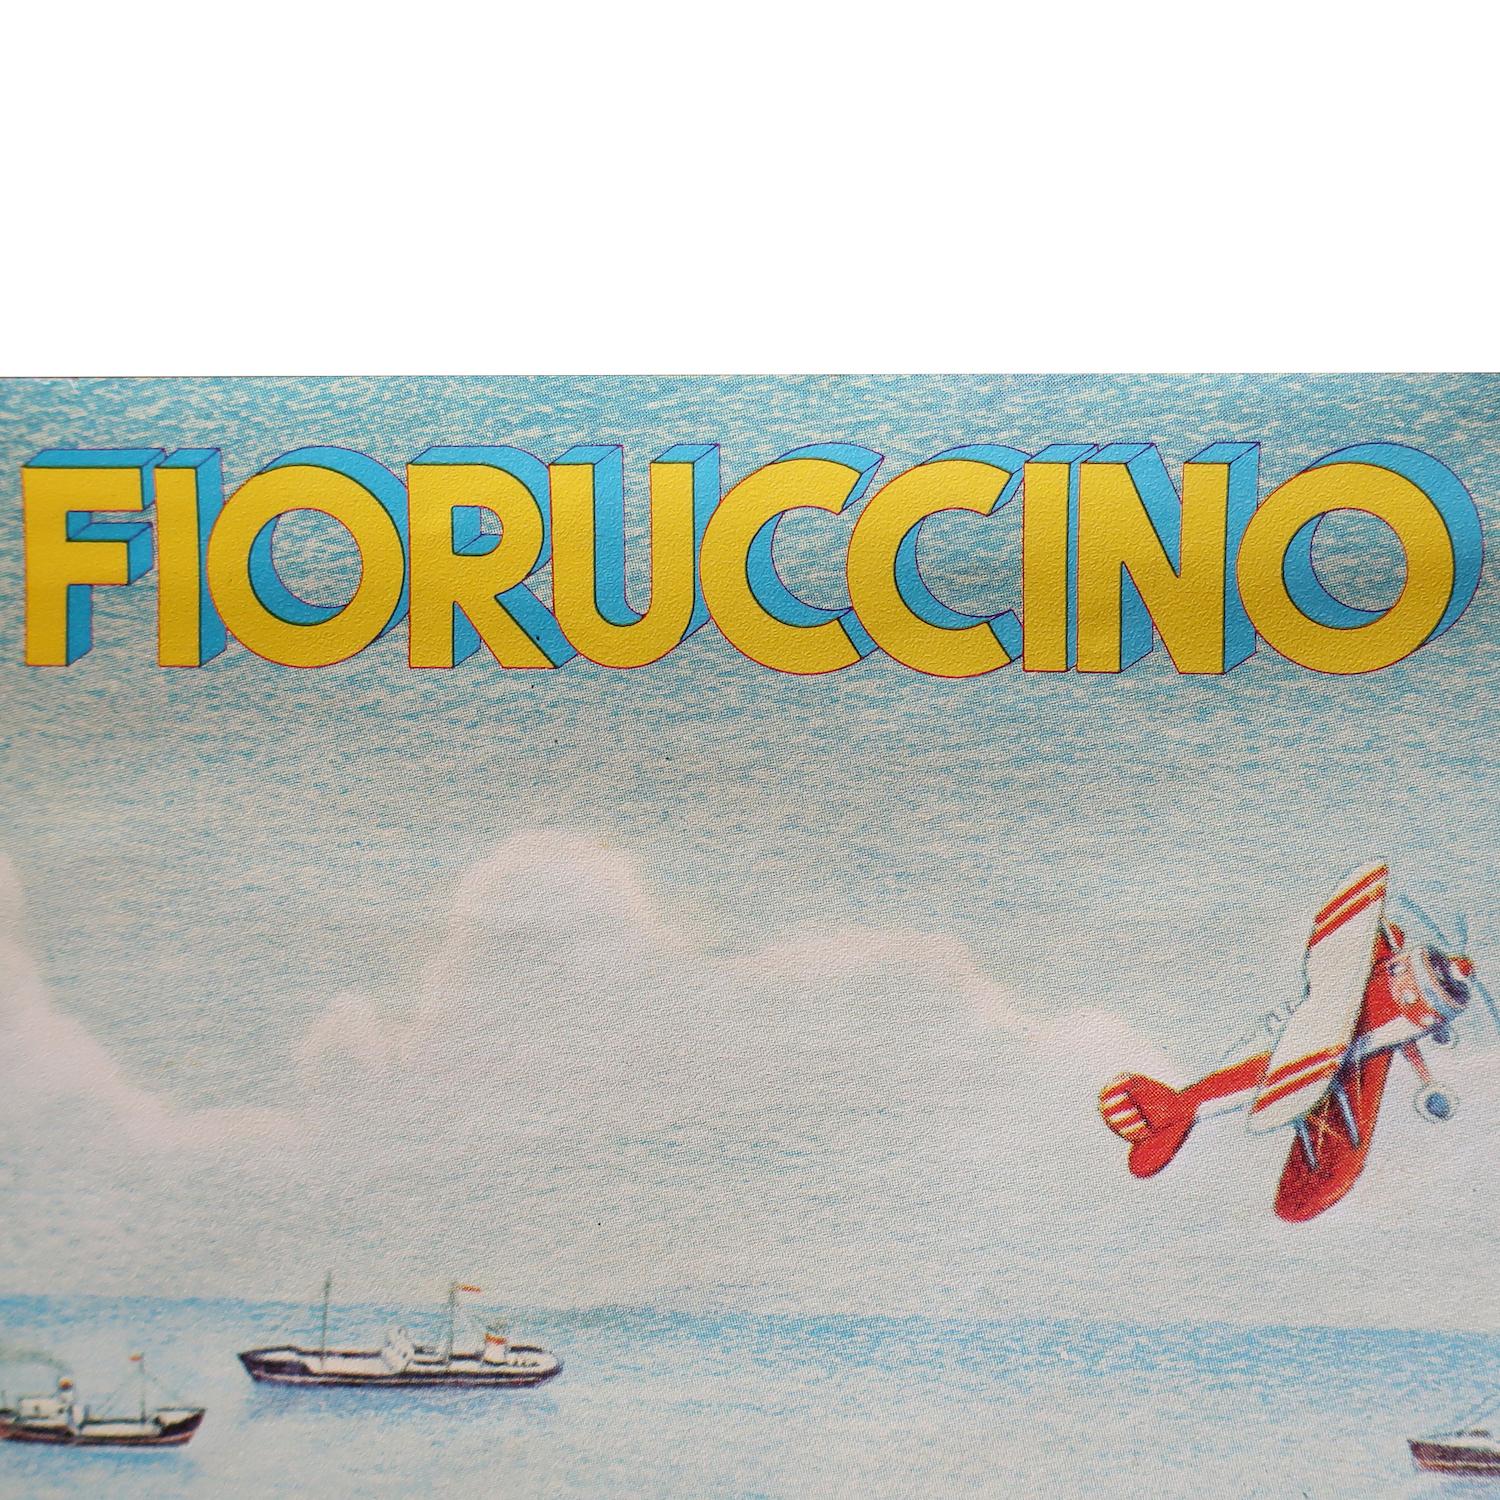 Paper Vintage Fiorucci “Fioruccino” Illustrated Poster 1979 For Sale